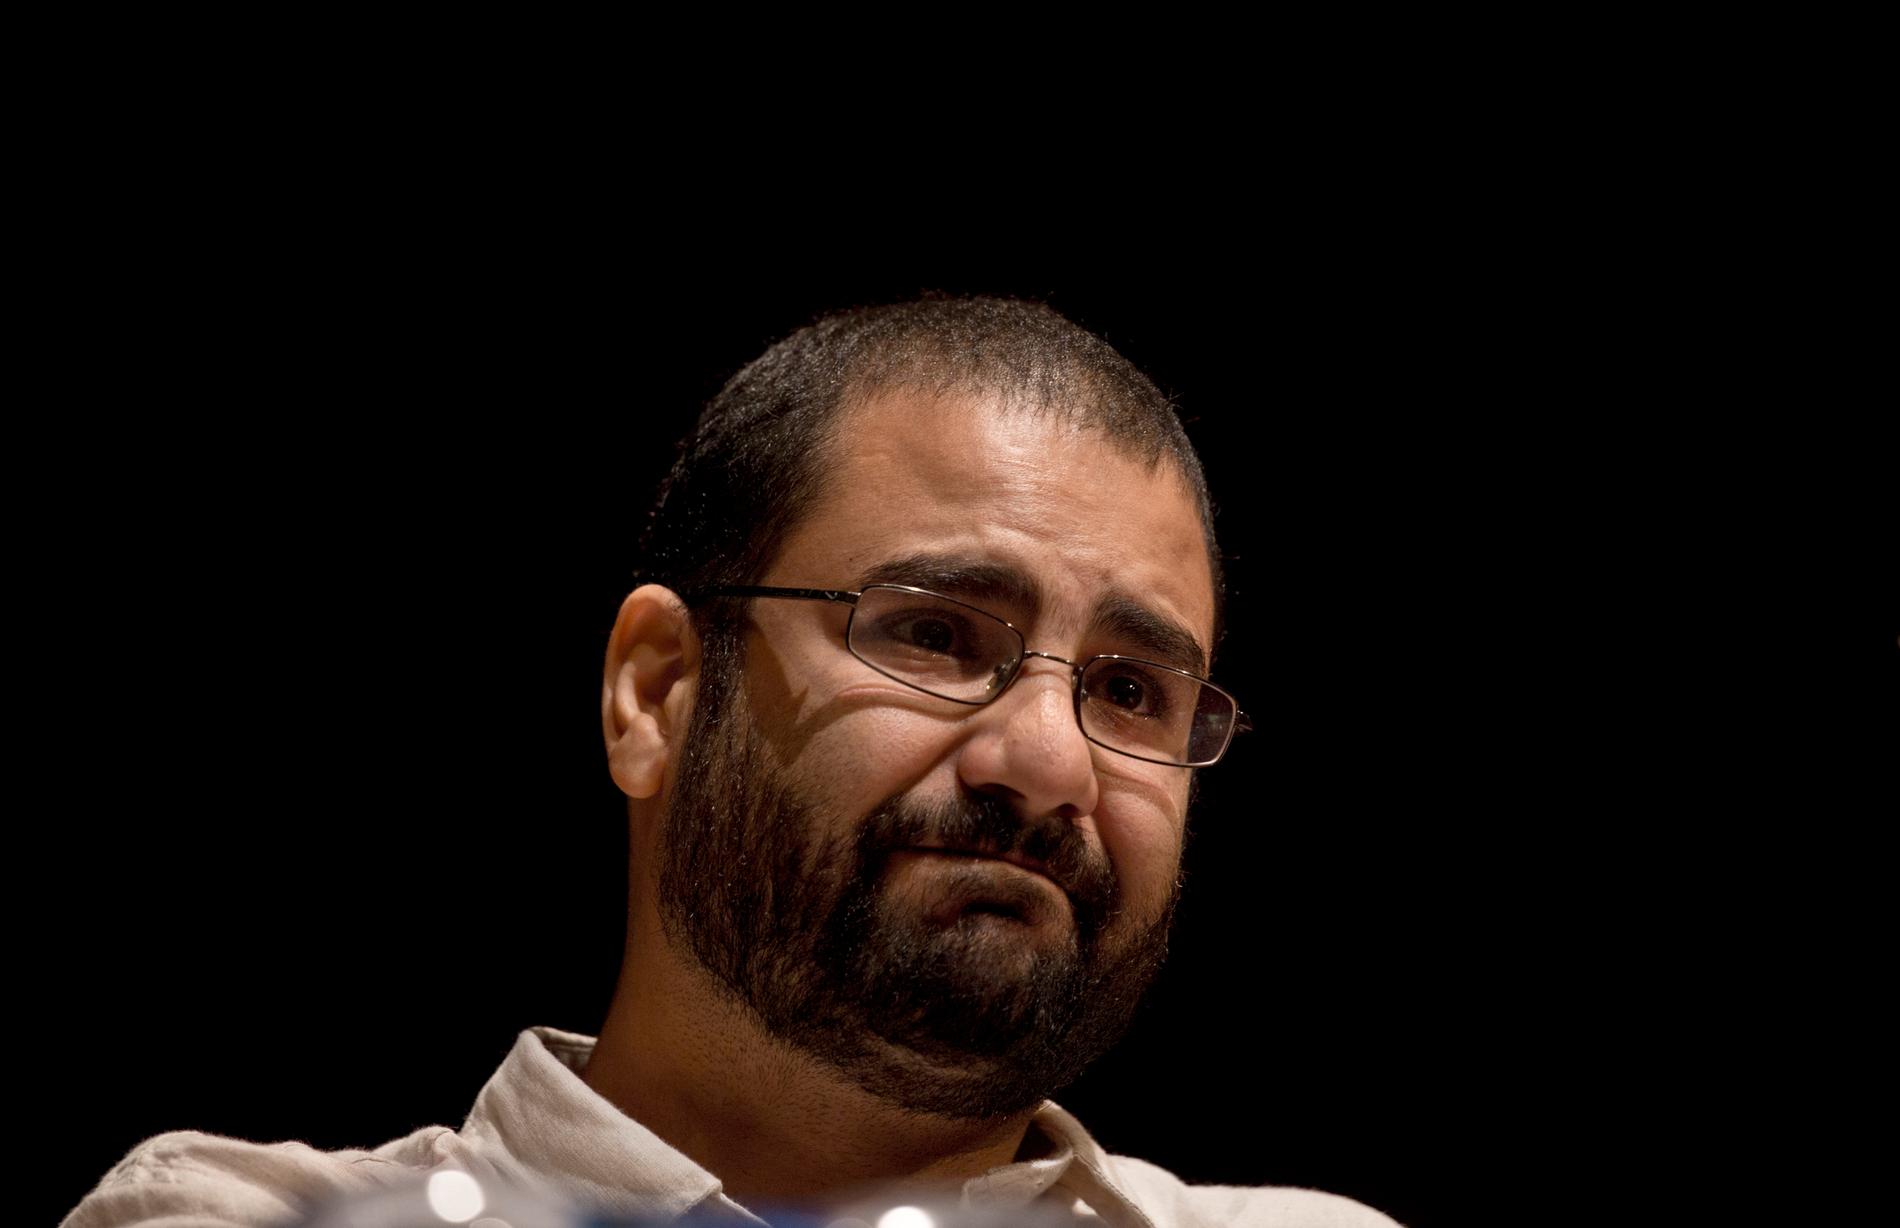 Den kände egyptiske demokratiaktivisten Alaa Abdel Fattah på en bild från 2014. Arkiivbild.